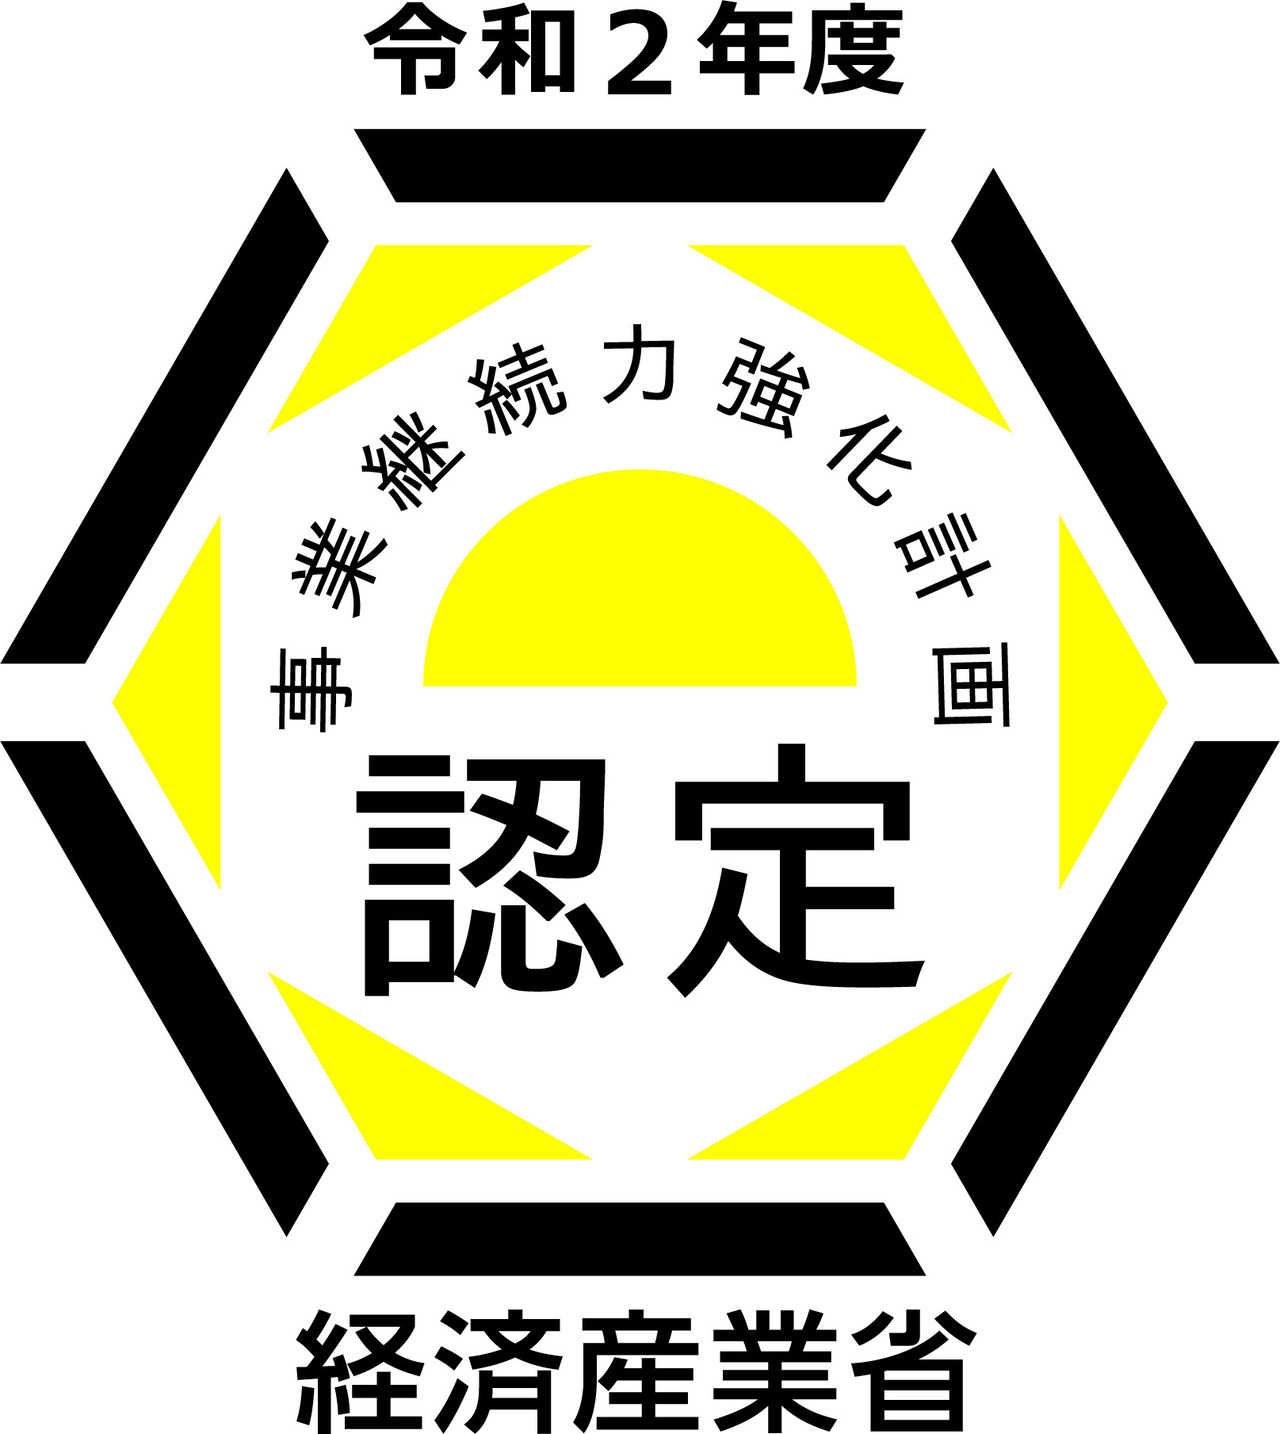 表面研究所 経済産業省認定ロゴ